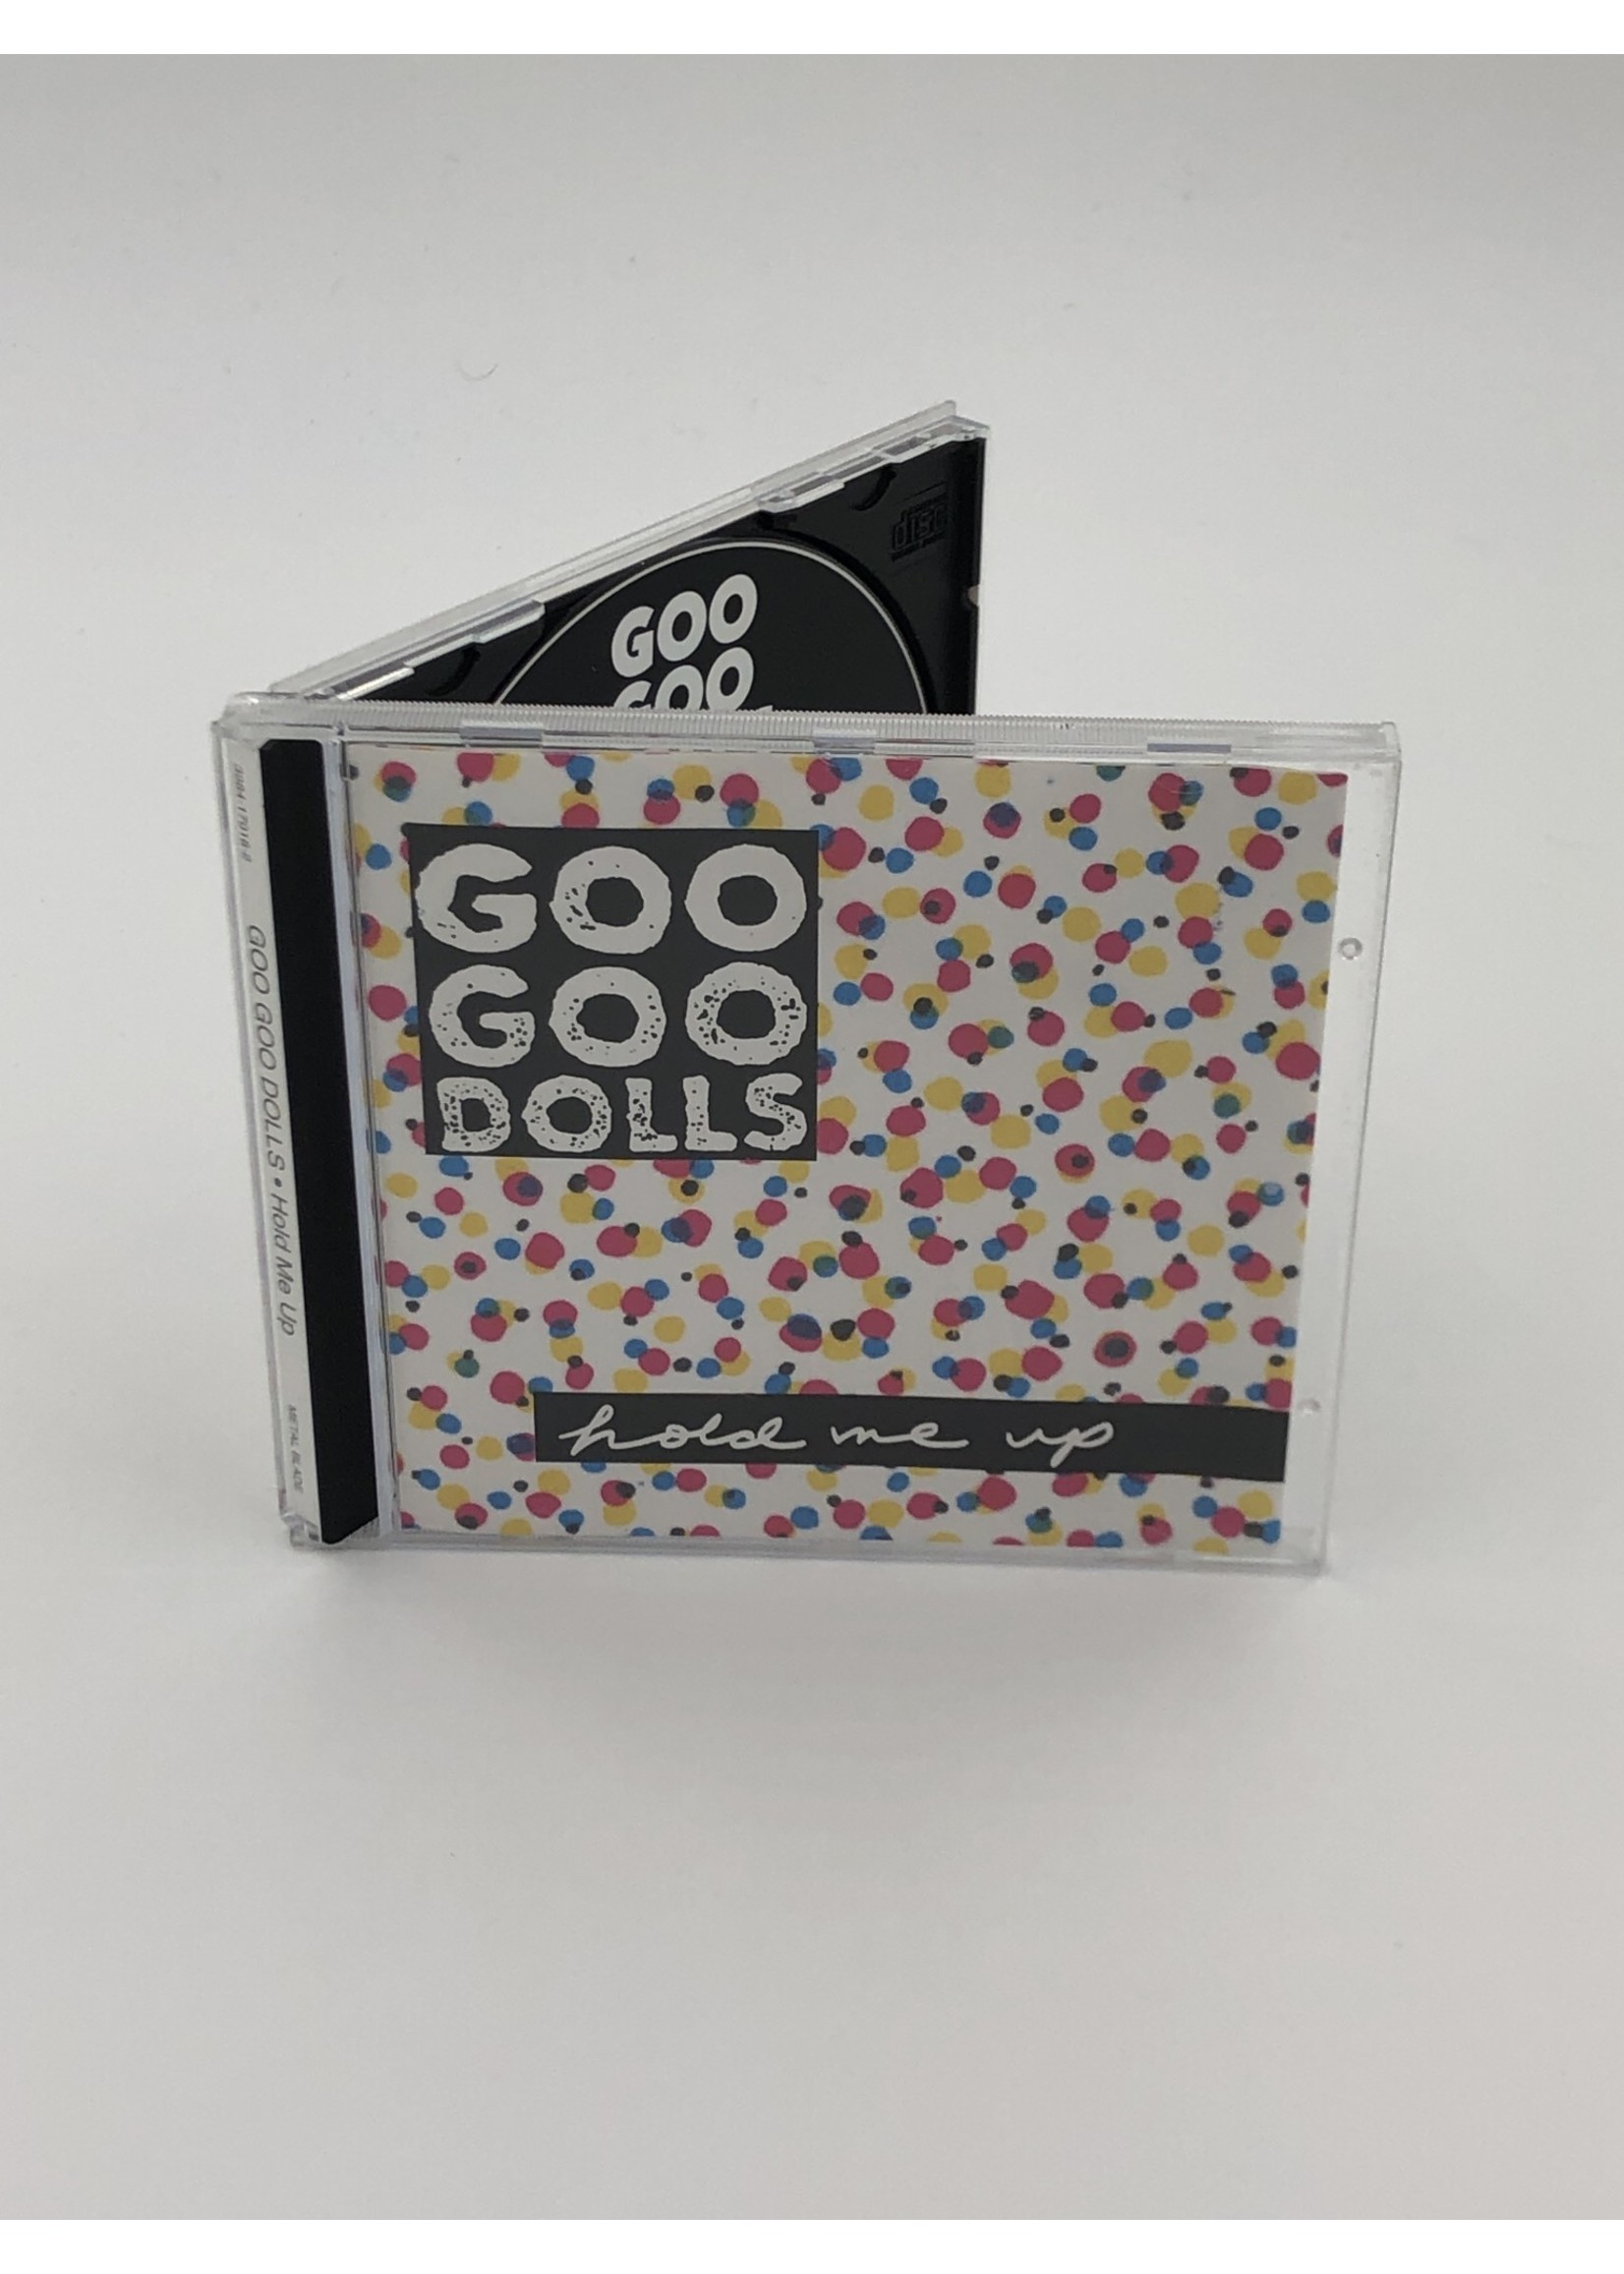 CD Goo Goo Dolls: Hold Me Up CD